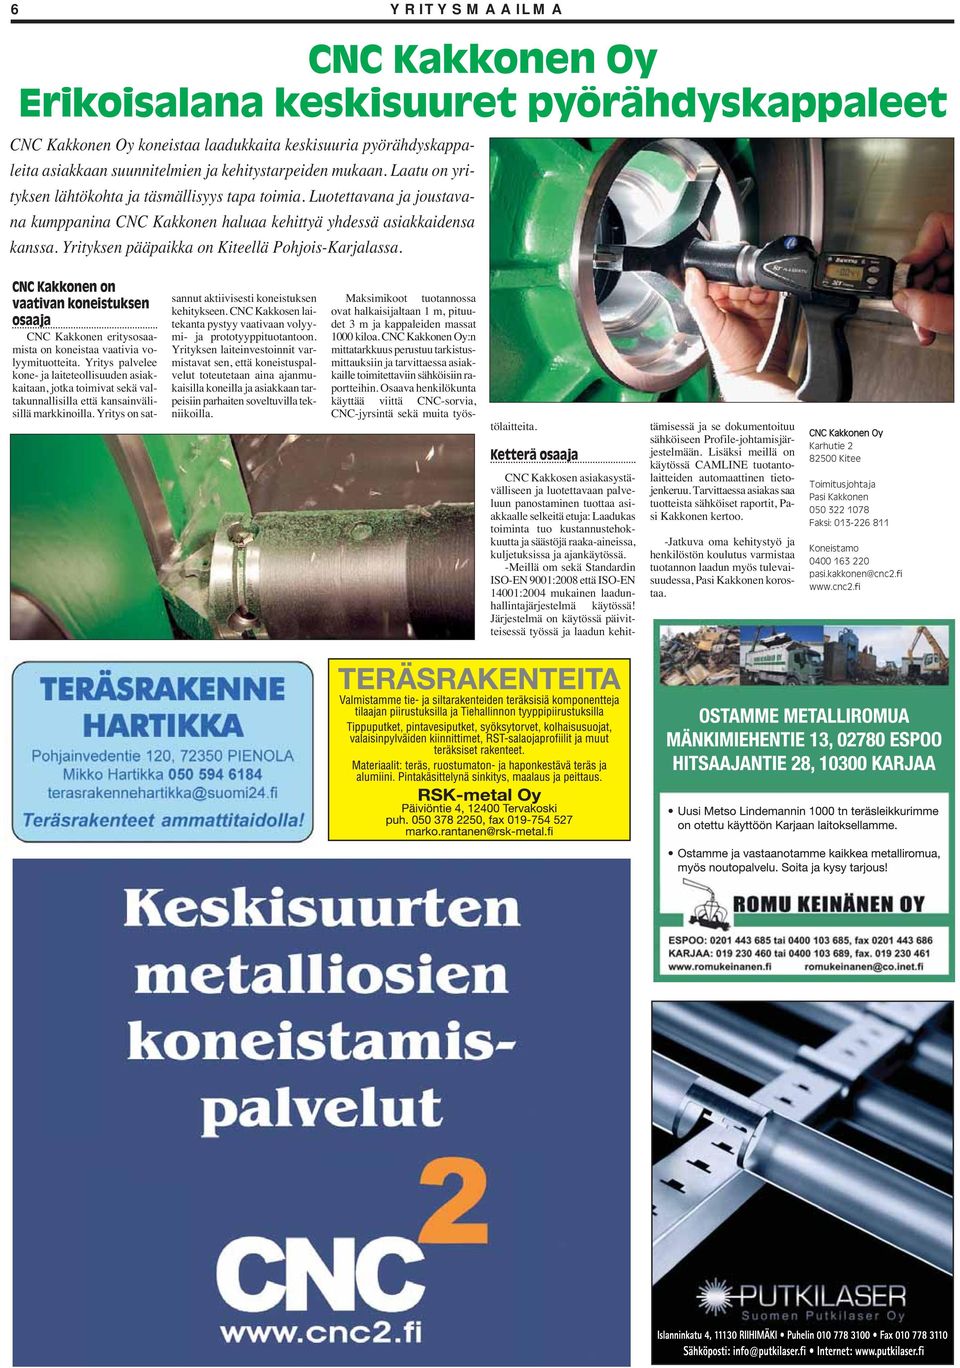 Yrityksen pääpaikka on Kiteellä Pohjois-Karjalassa. CNC Kakkonen on vaativan koneistuksen osaaja CNC Kakkonen eritysosaamista on koneistaa vaativia volyymituotteita.